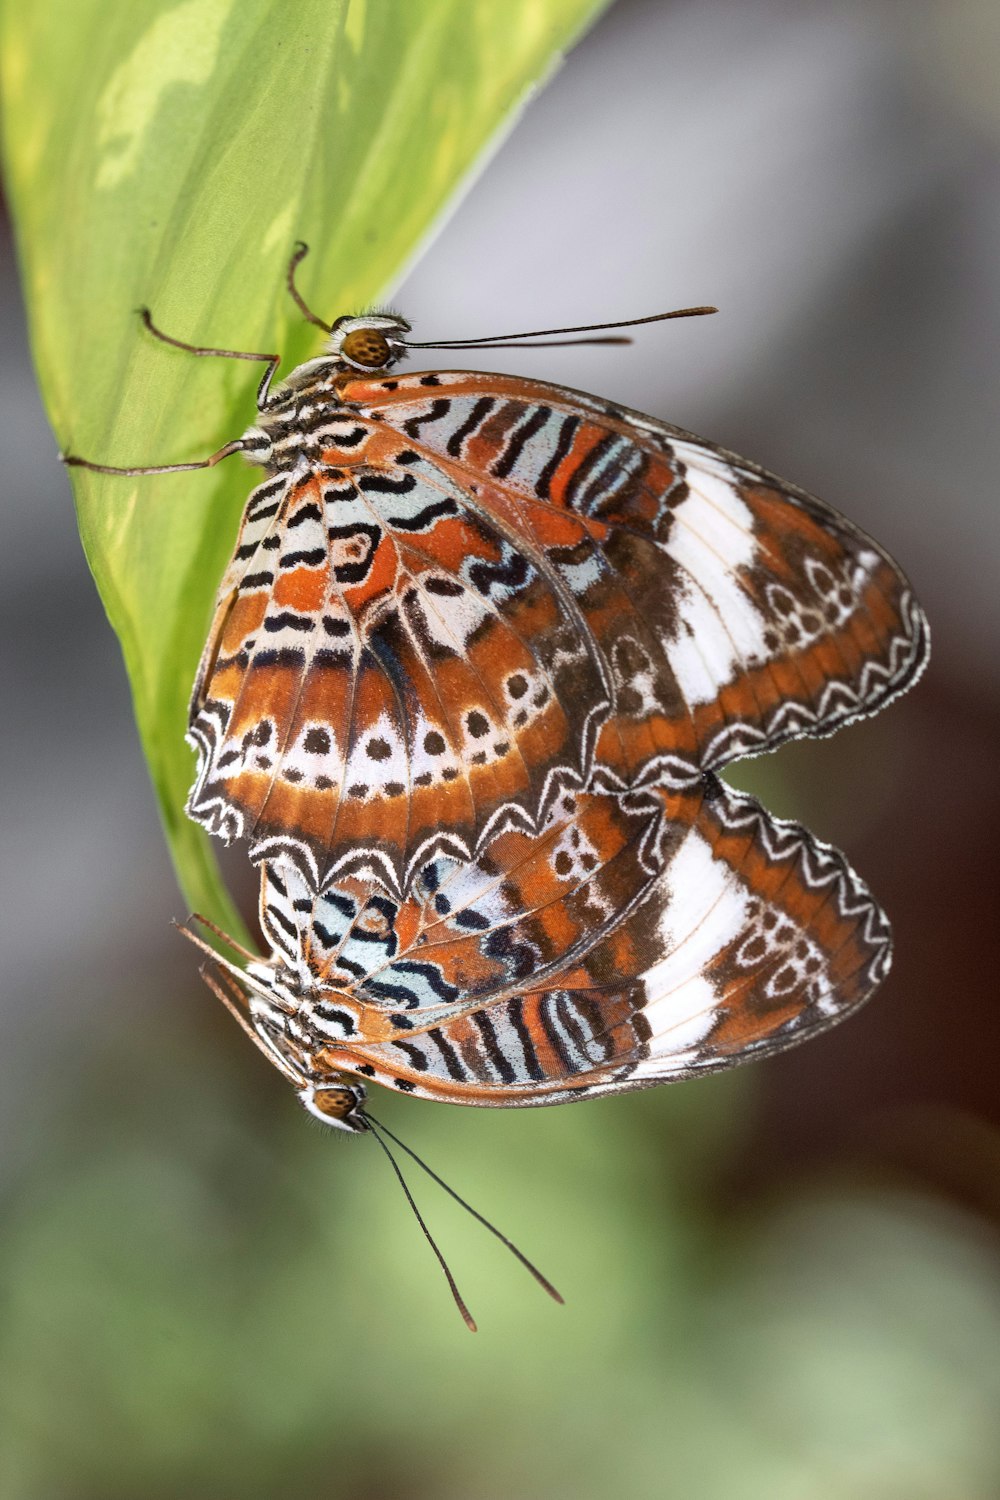 Brauner und weißer Schmetterling sitzt tagsüber auf grünem Blatt in Nahaufnahmen